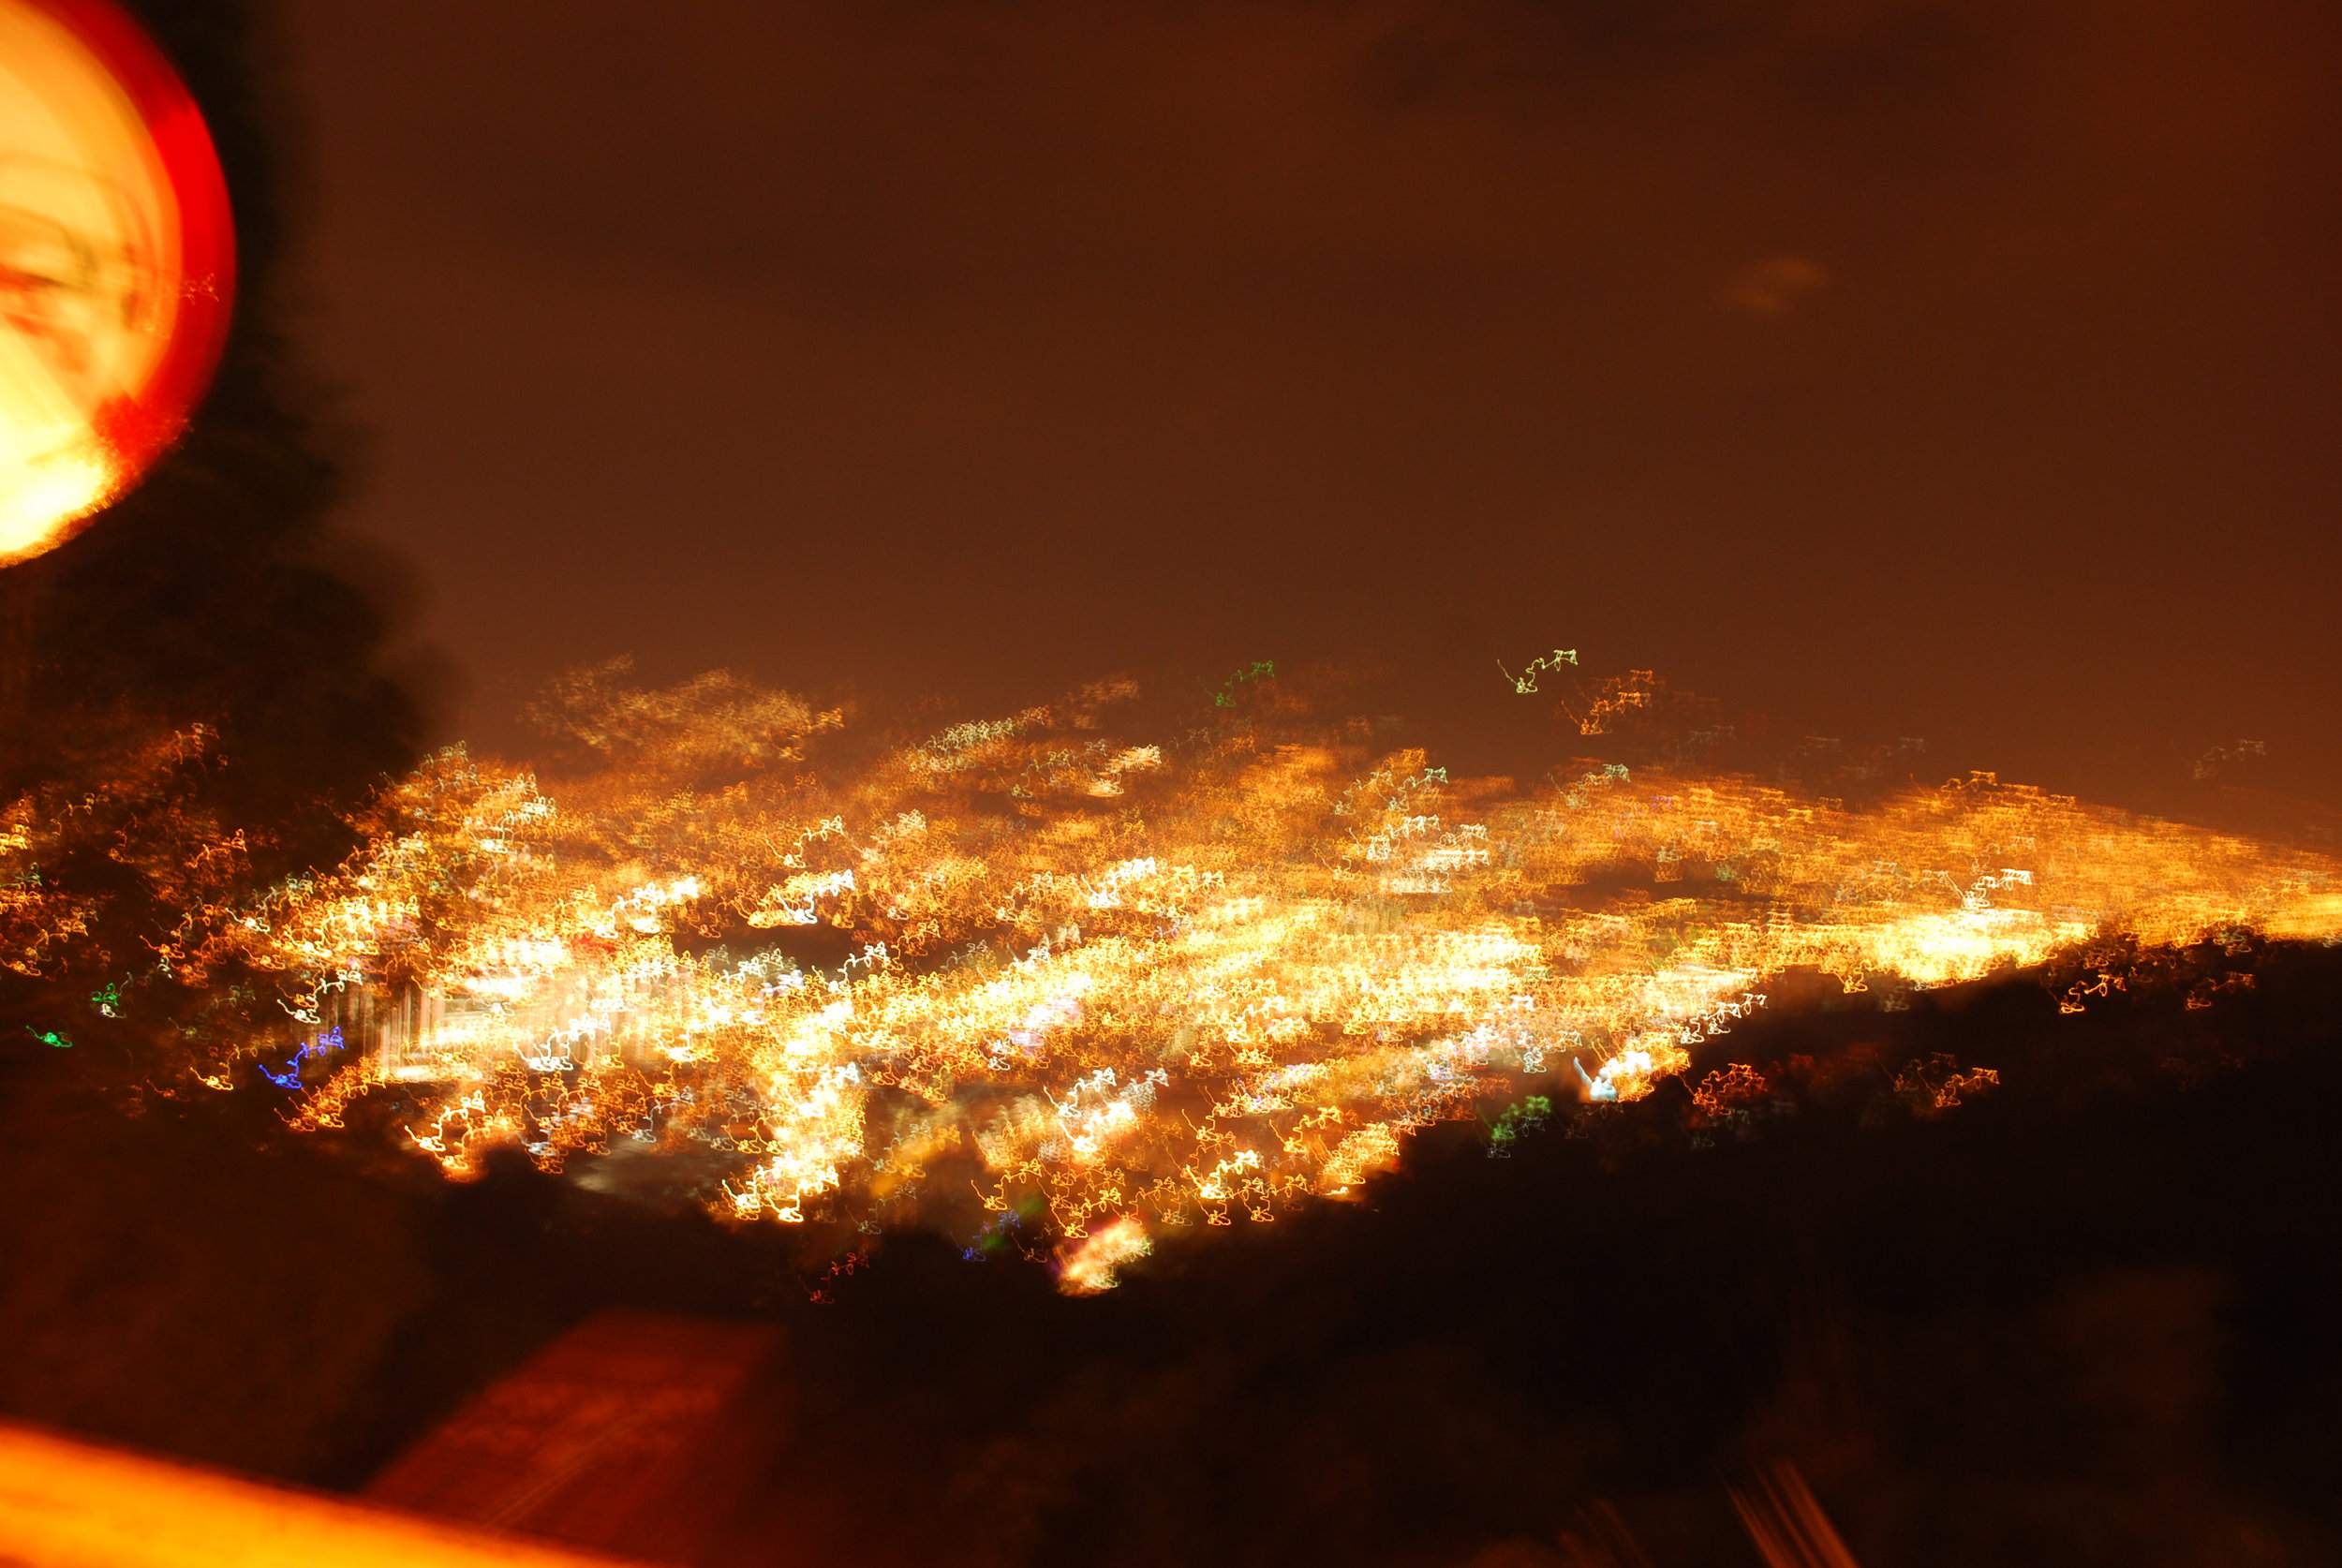 Medellín at night